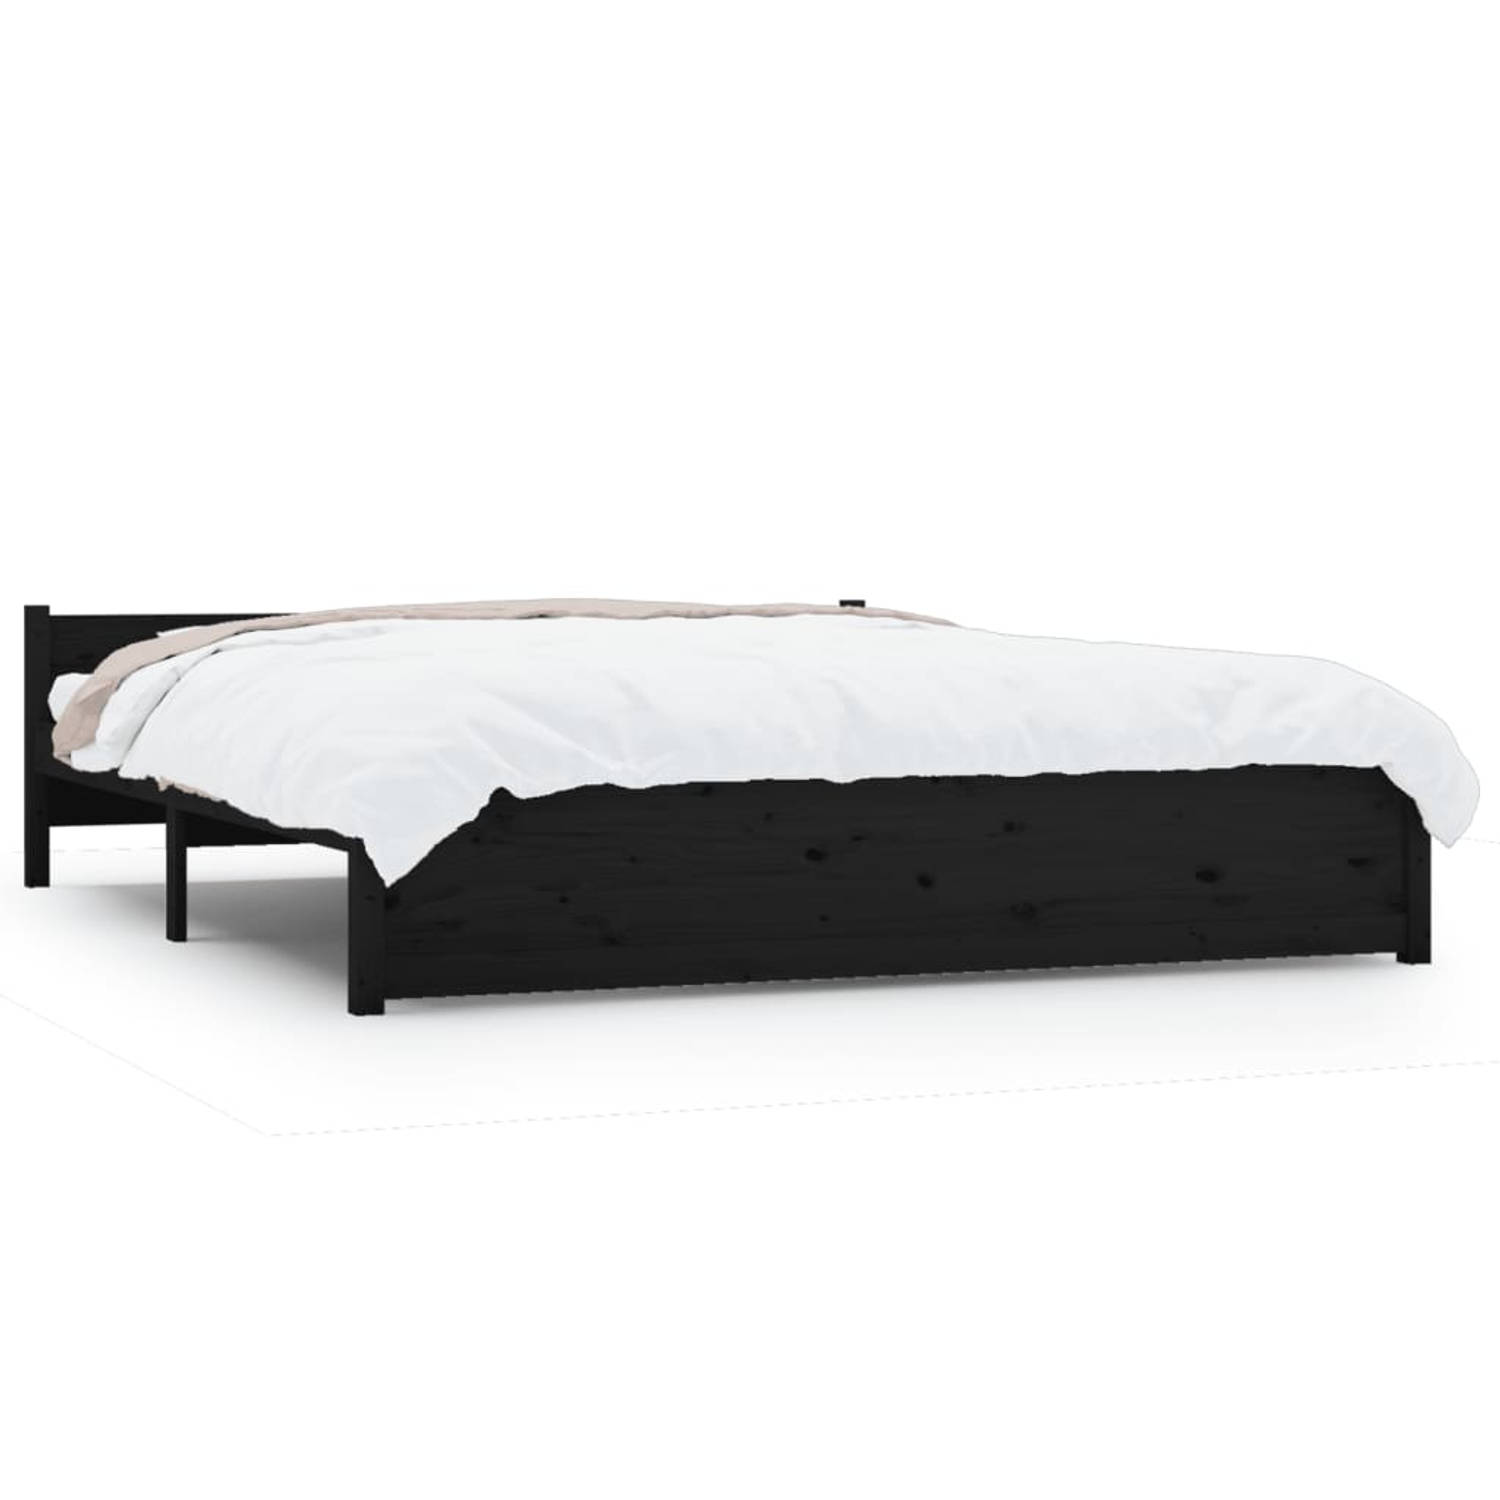 The Living Store Bedframe massief hout zwart 160x200 cm - Bedframe - Bedframes - Bed - Bedbodem - Ledikant - Bed Frame - Massief Houten Bedframe - Slaapmeubel - Tweepersoonsbed - B